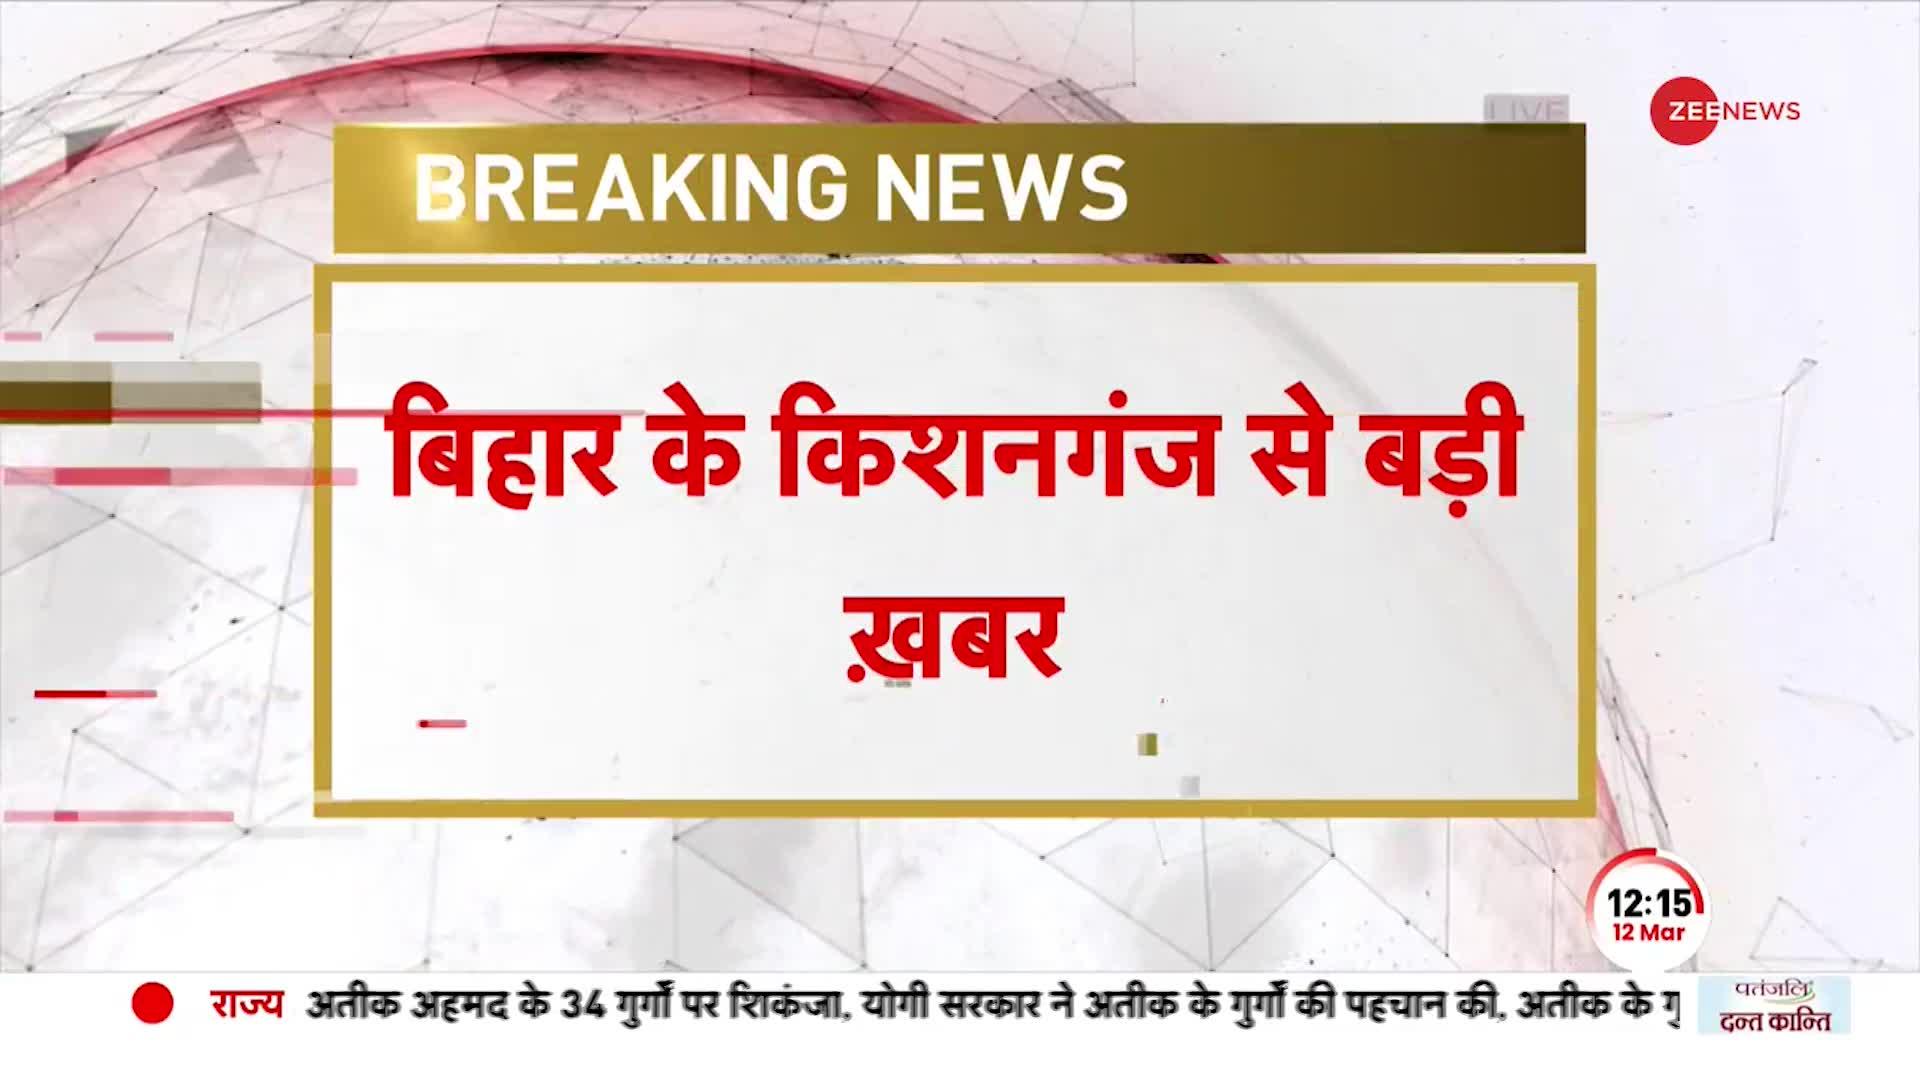 Breaking: Bihar के Kishanganj से बड़ी खबर, दो मंदिरों में कुछ लोगों ने लगाईं आग